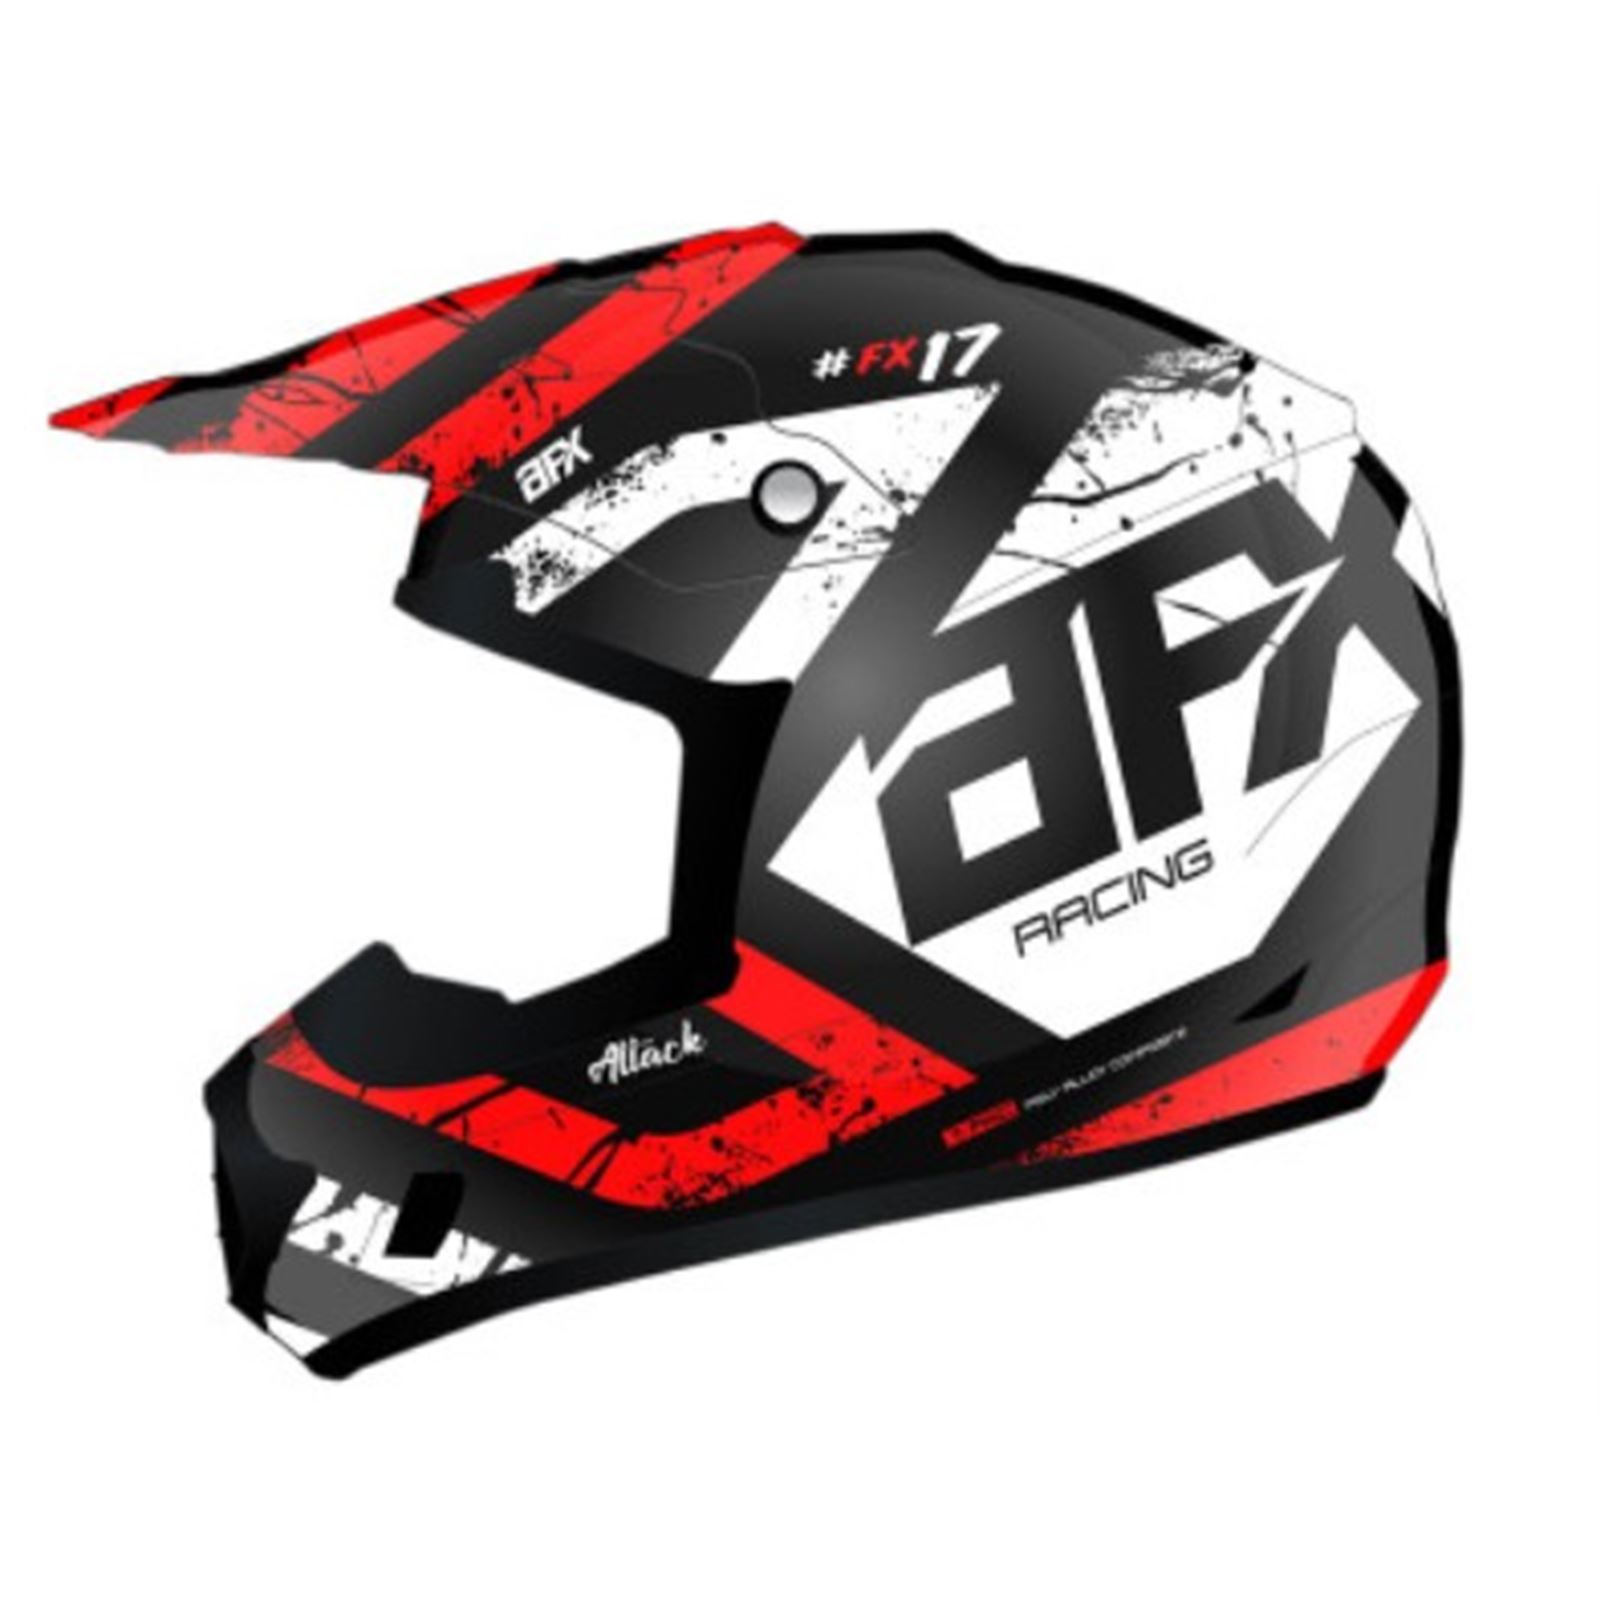 AFX FX-17 Helmet - Attack - Matte Black/Red - X-Small